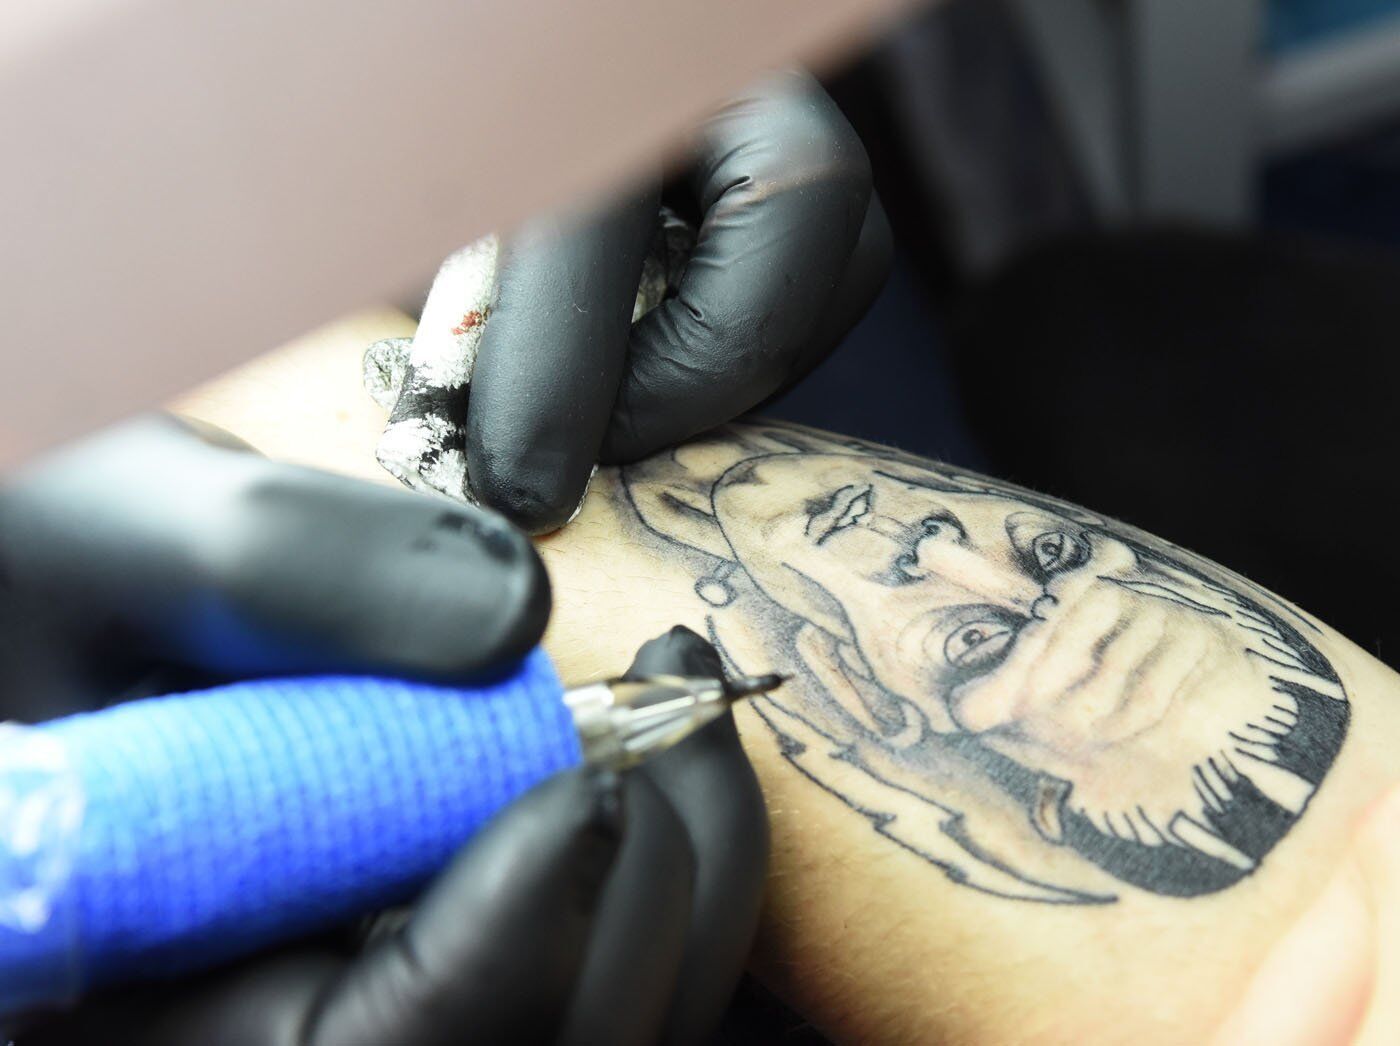 Punjabi Sikh forearm in progress | Tattoo studio, Private tattoos, Tattoos